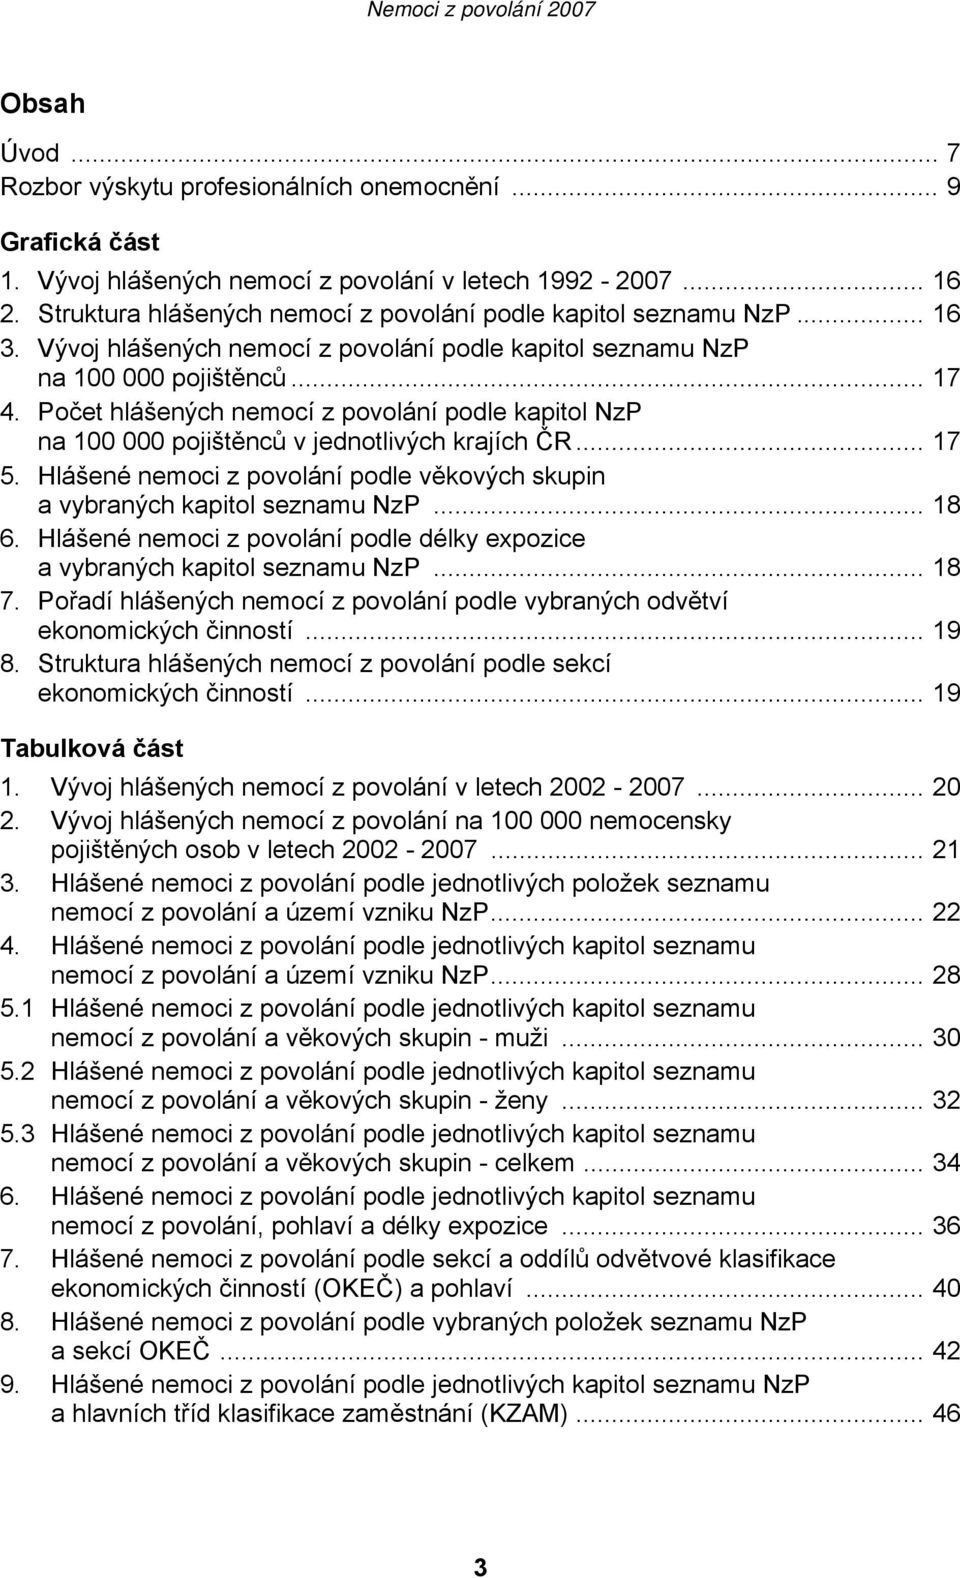 Počet hlášených nemocí z povolání podle kapitol NzP na 100 000 pojištěnců v jednotlivých krajích ČR... 17 5. Hlášené nemoci z povolání podle věkových skupin a vybraných kapitol seznamu NzP... 18 6.